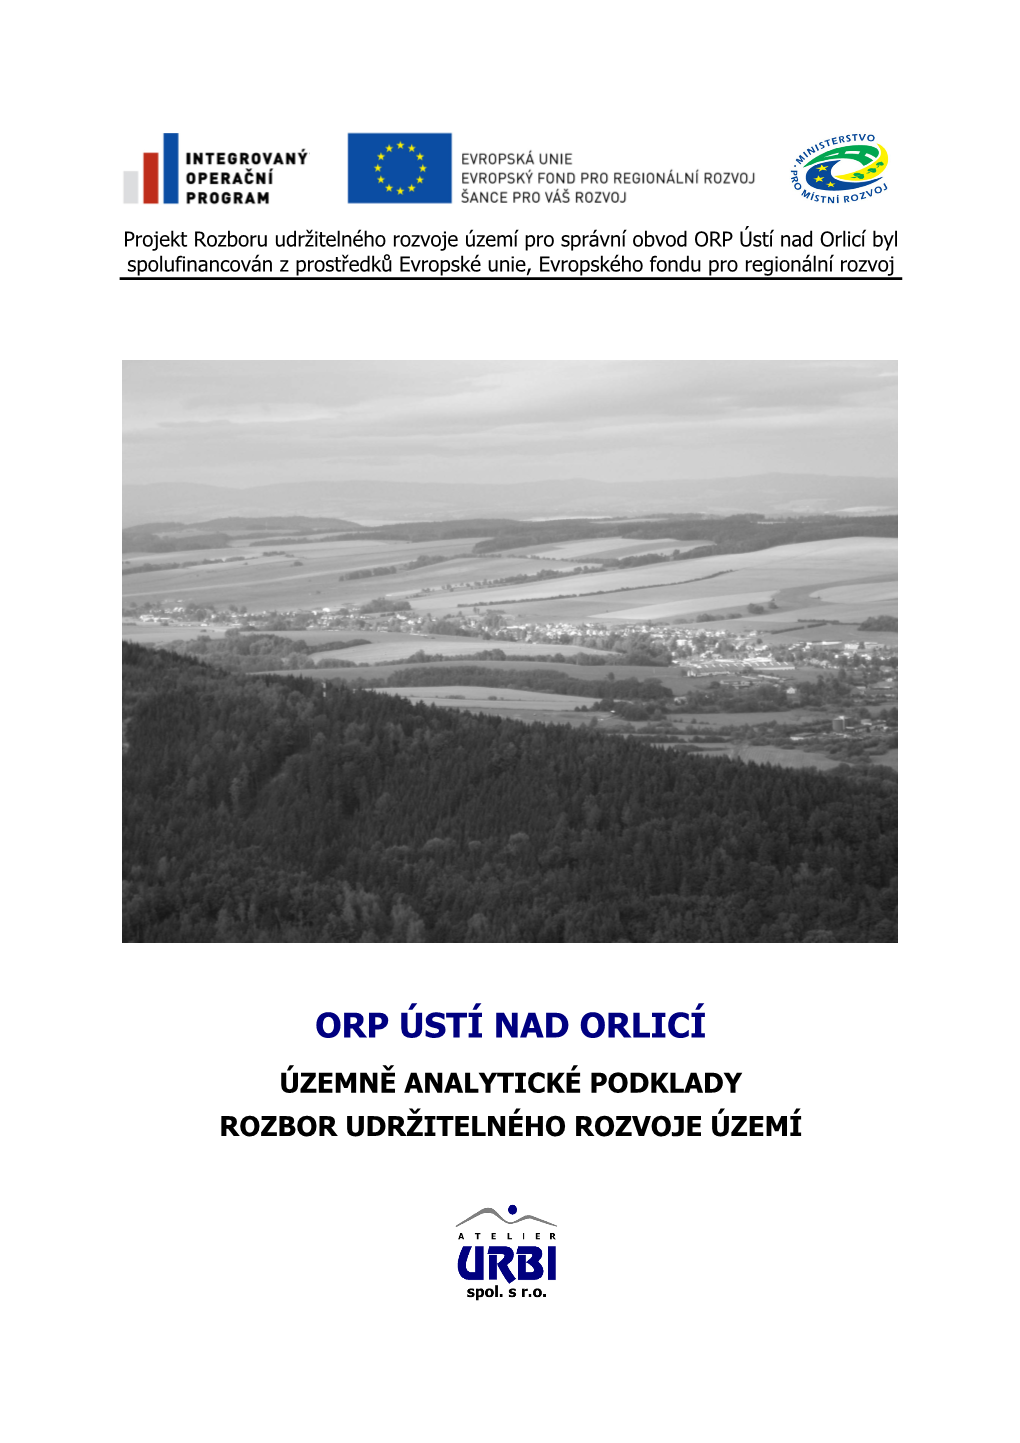 ORP Ústí Nad Orlicí Byl Spolufinancován Z Prostředků Evropské Unie, Evropského Fondu Pro Regionální Rozvoj